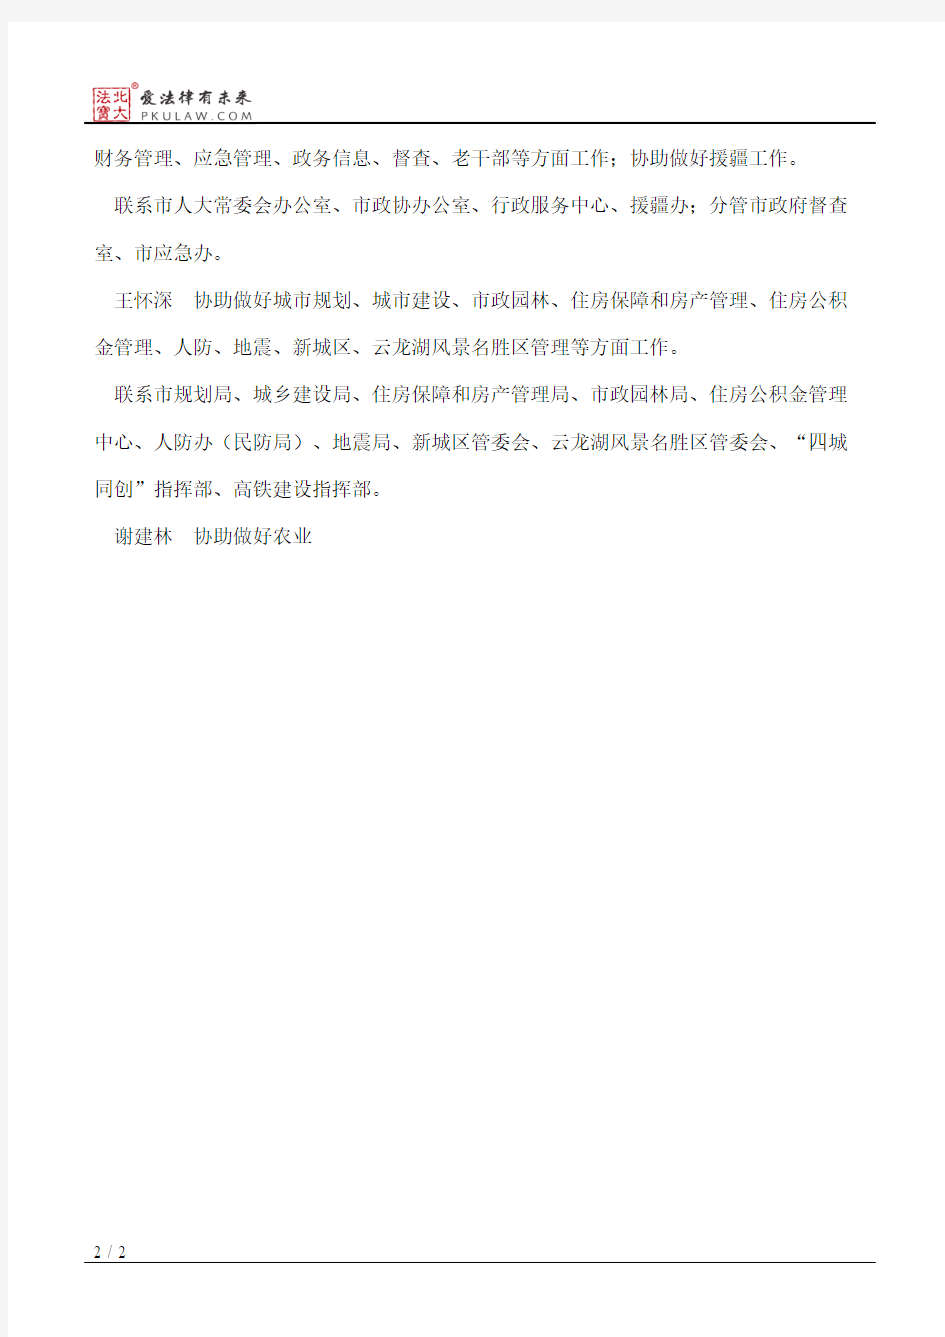 徐州市人民政府办公室关于市政府办公室领导成员分工的通知(2013)